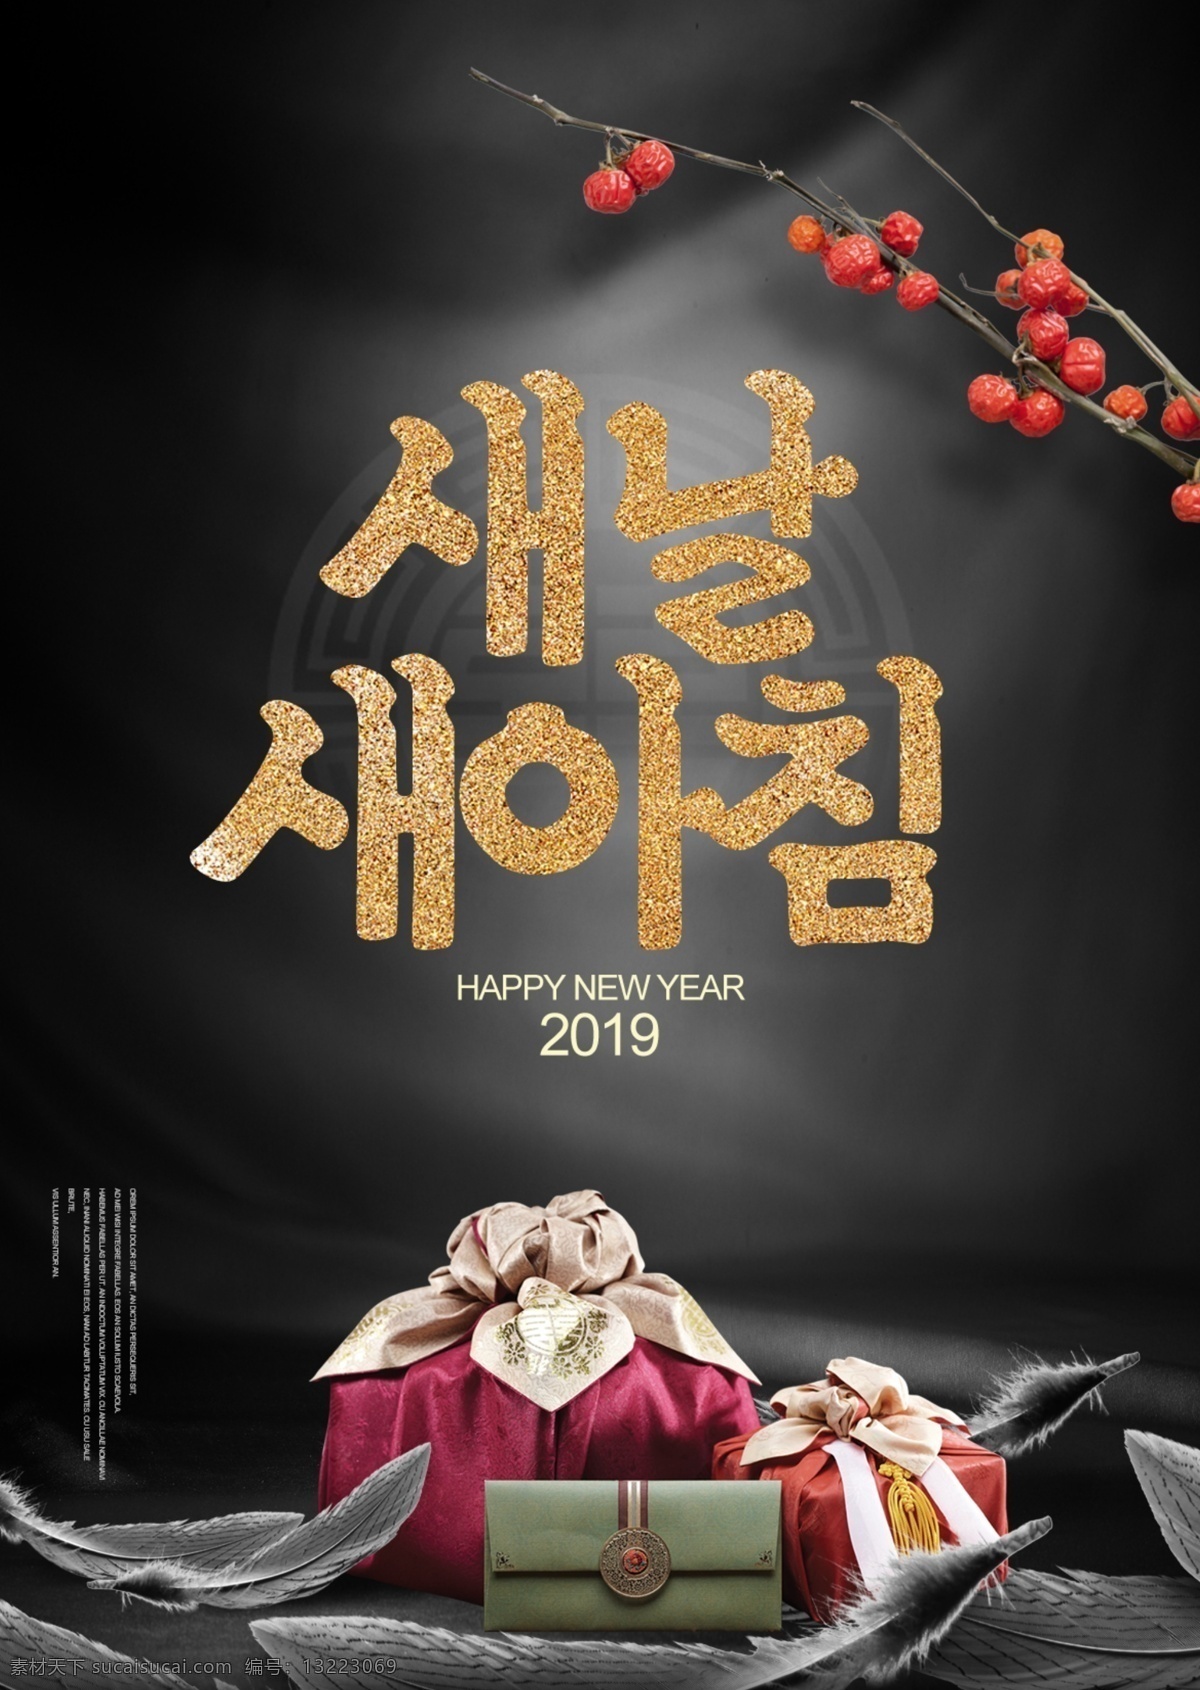 简单 时尚 高级 韩国 文化 传统 丝绸 宣传海报 花 毛笔字 绸缎 礼物 时装 海报 现代 宣传 华丽